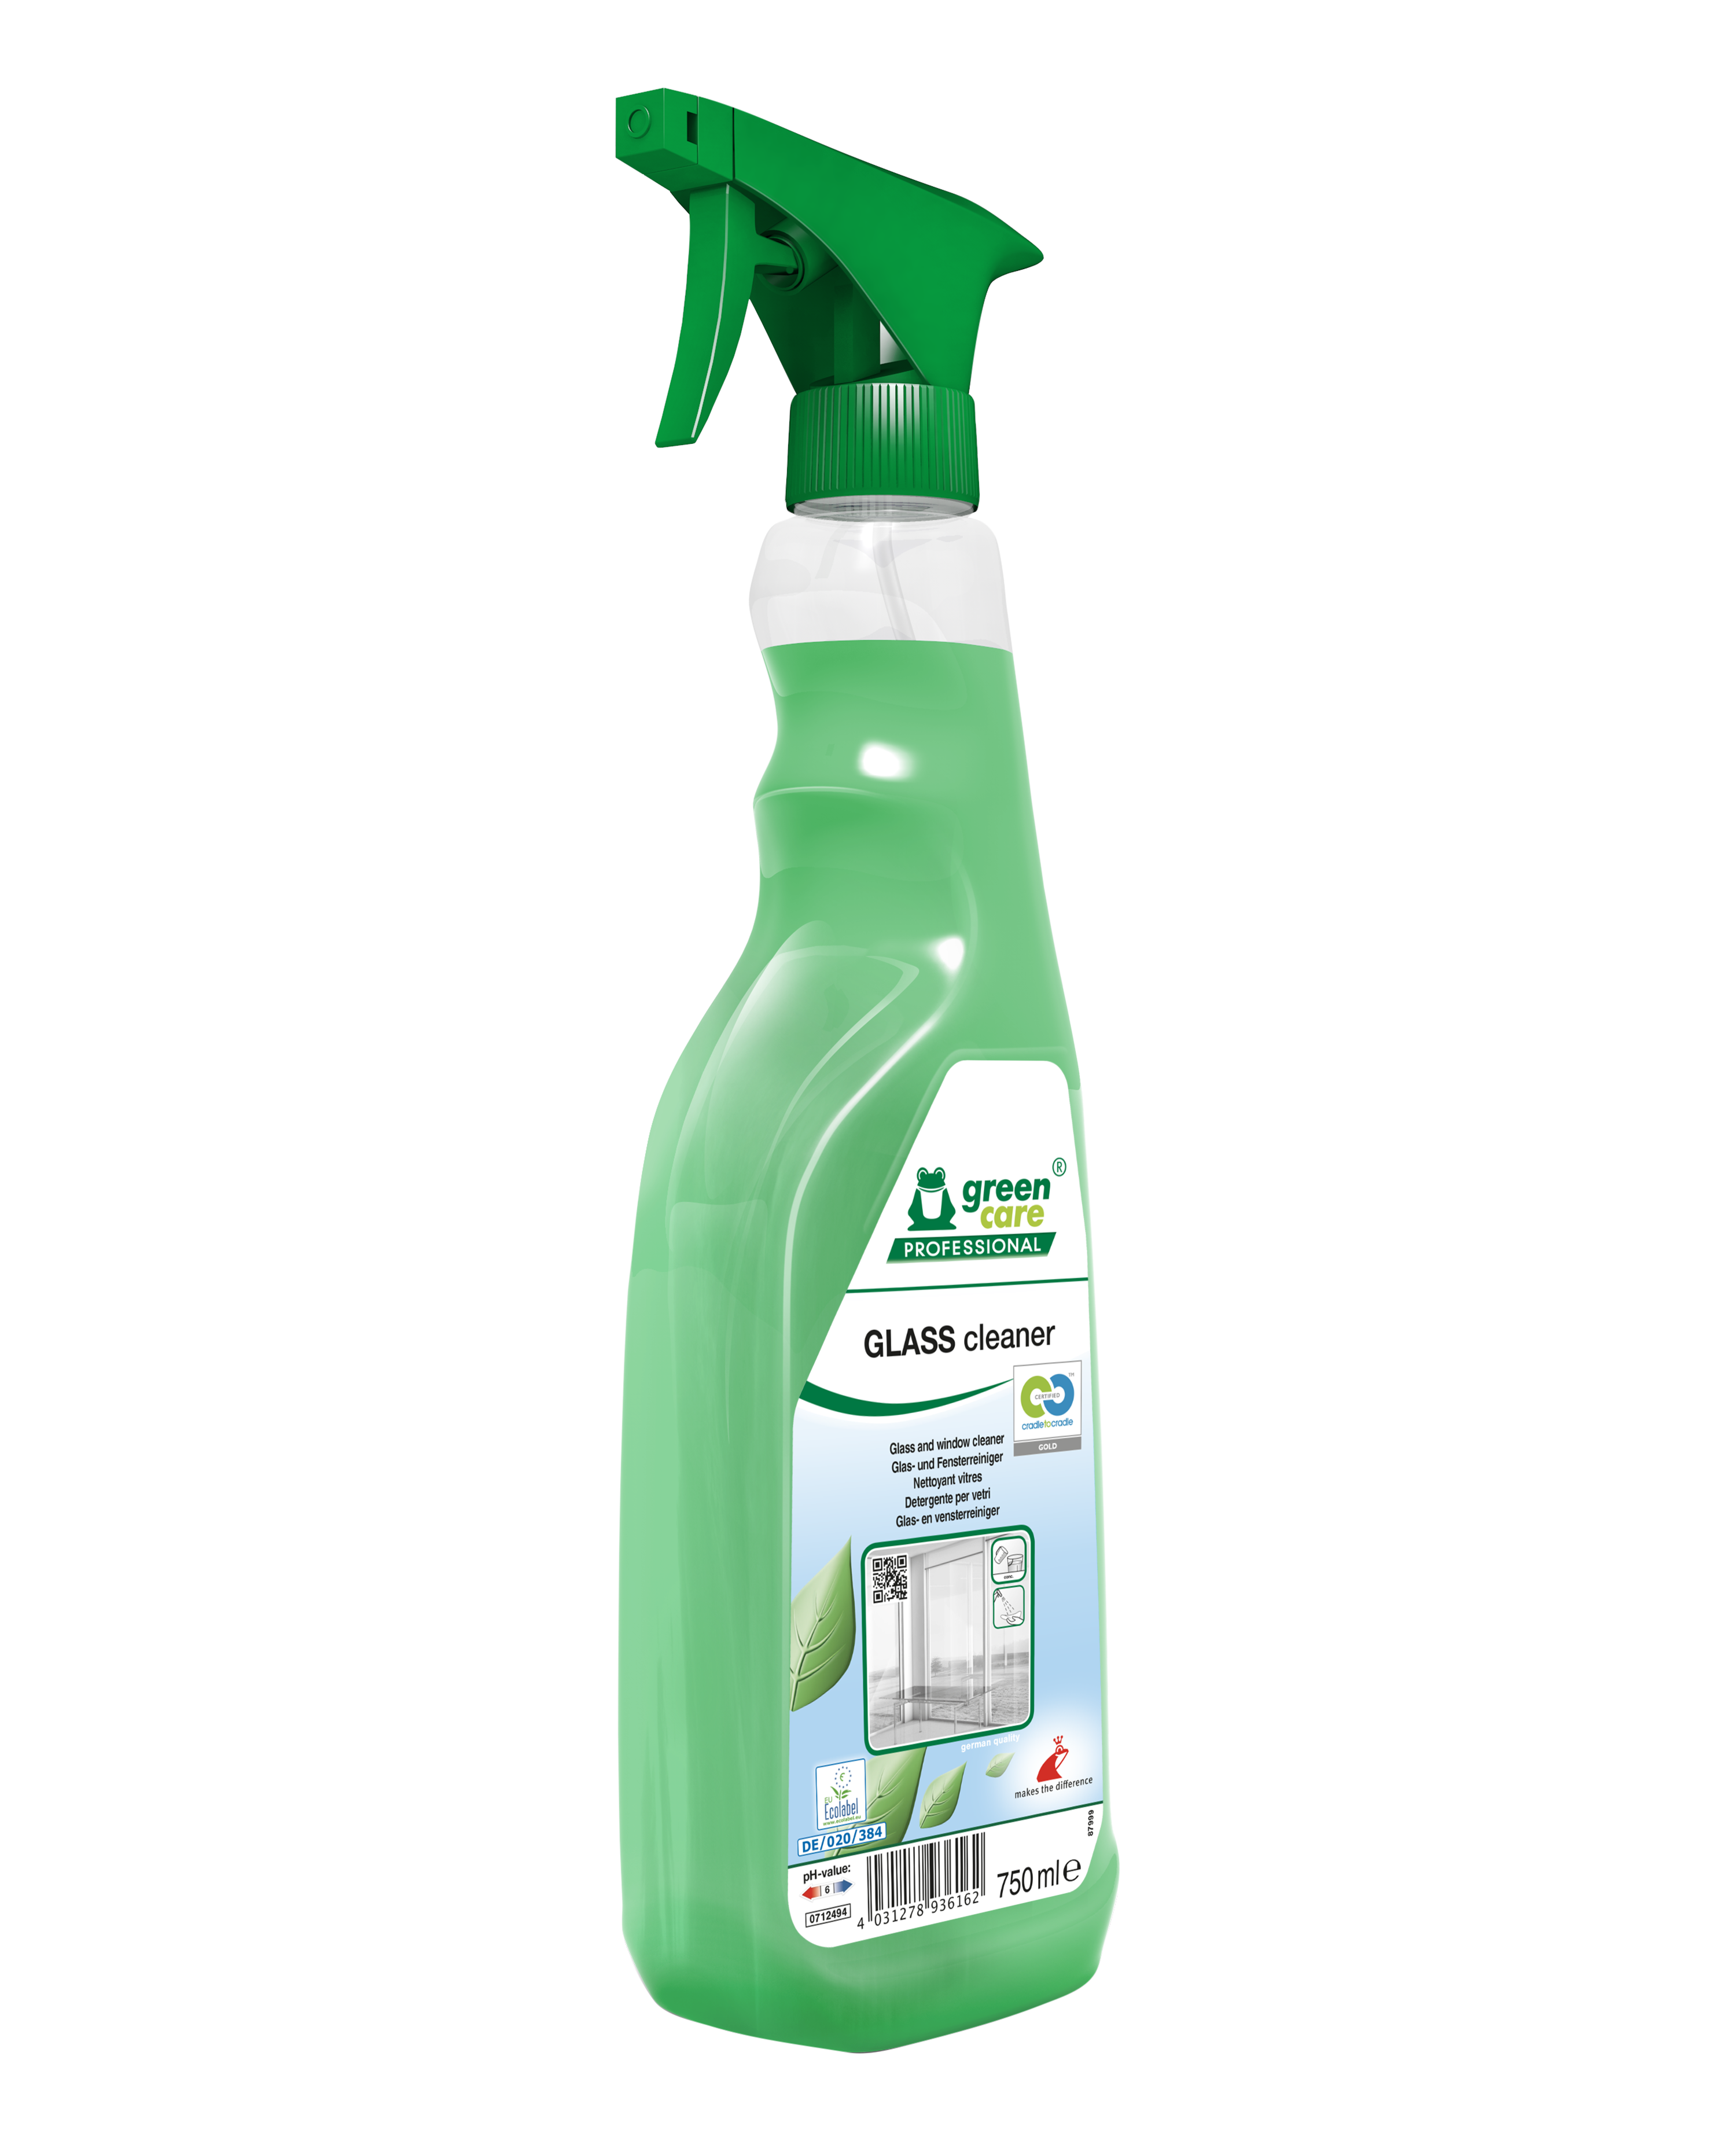 TANA green care professional GLASS cleaner, Glas- und Fensterreiniger,  750 ML Sprühflasche